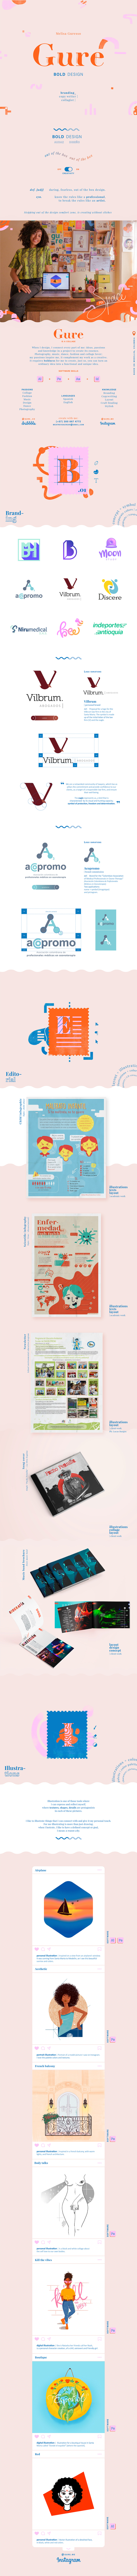 branding  colombia diseñador grafico diseño gráfico Illustrator photoshop portafolio portfolio collage editorial